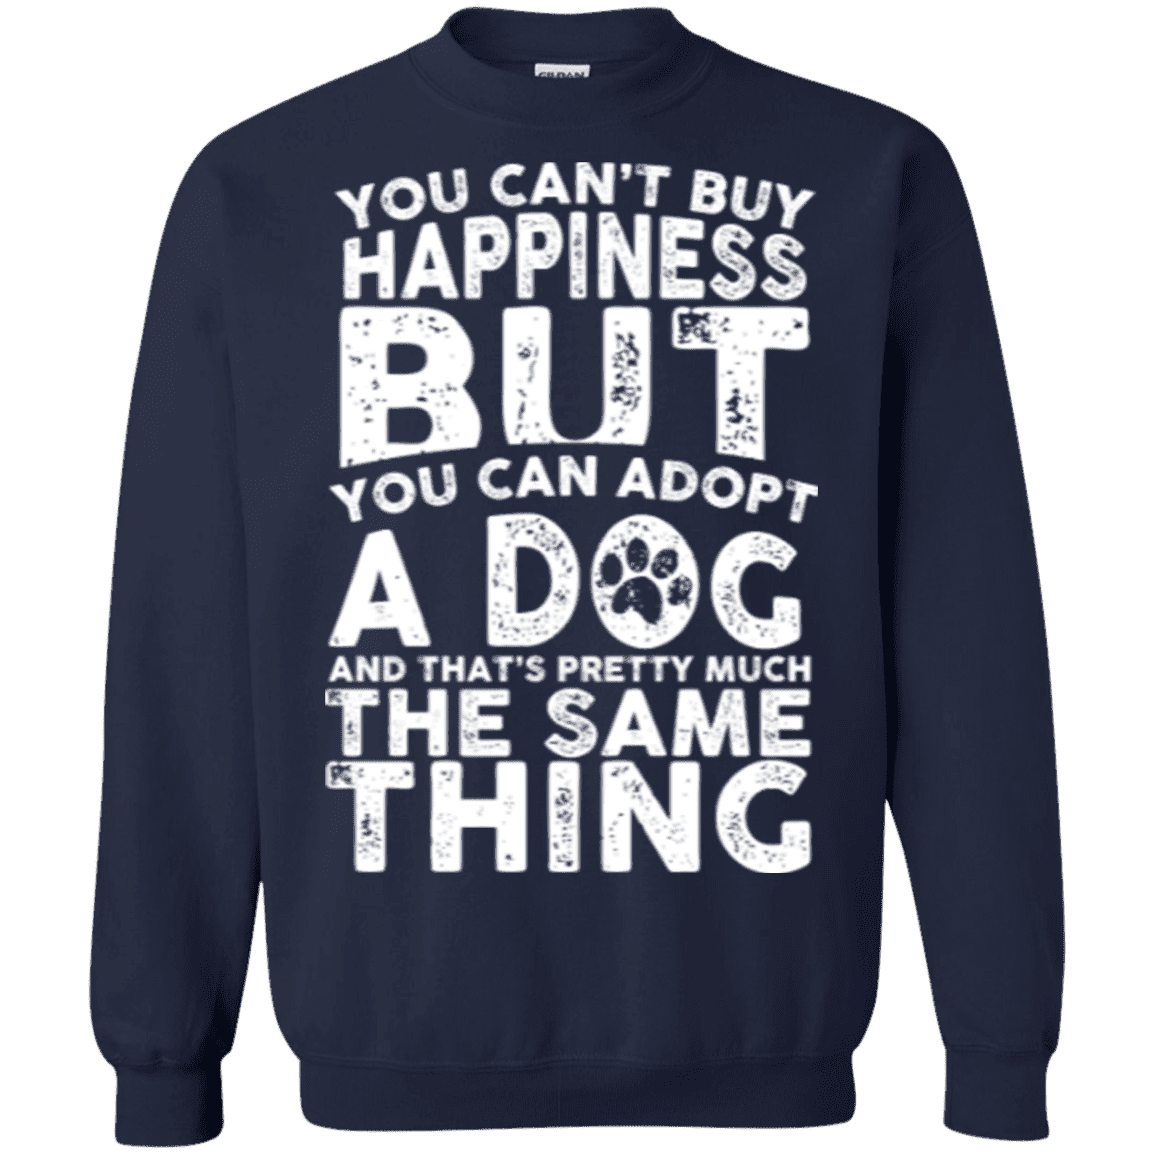 You Cant Buy Happiness - Sweatshirt.